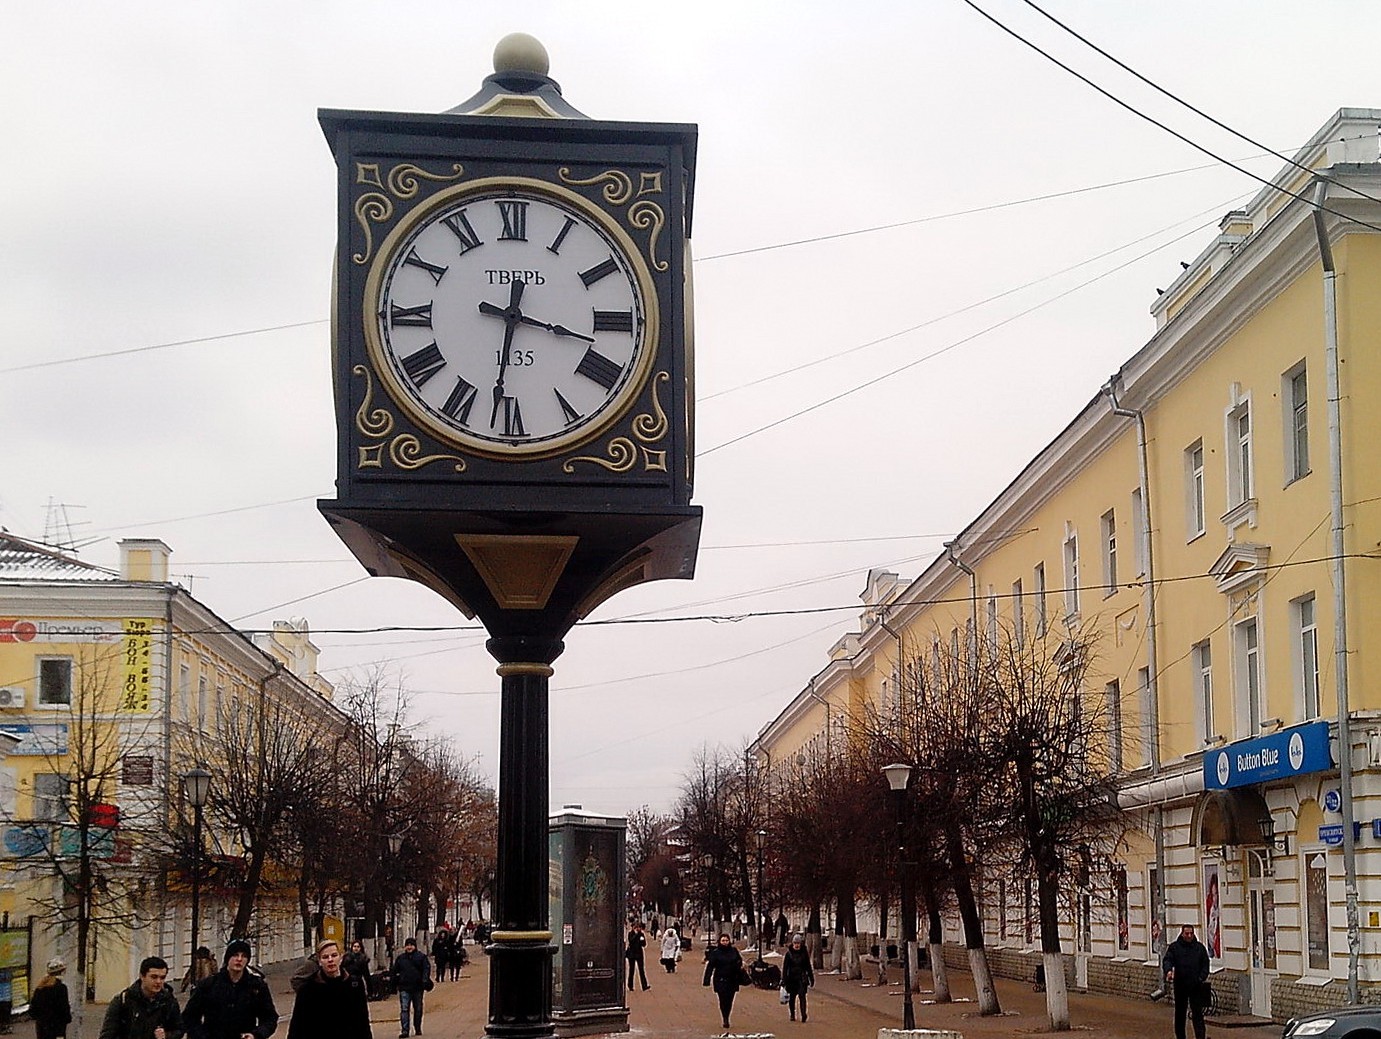 Тверь часы на бульвар Радищева и Трехсвятская